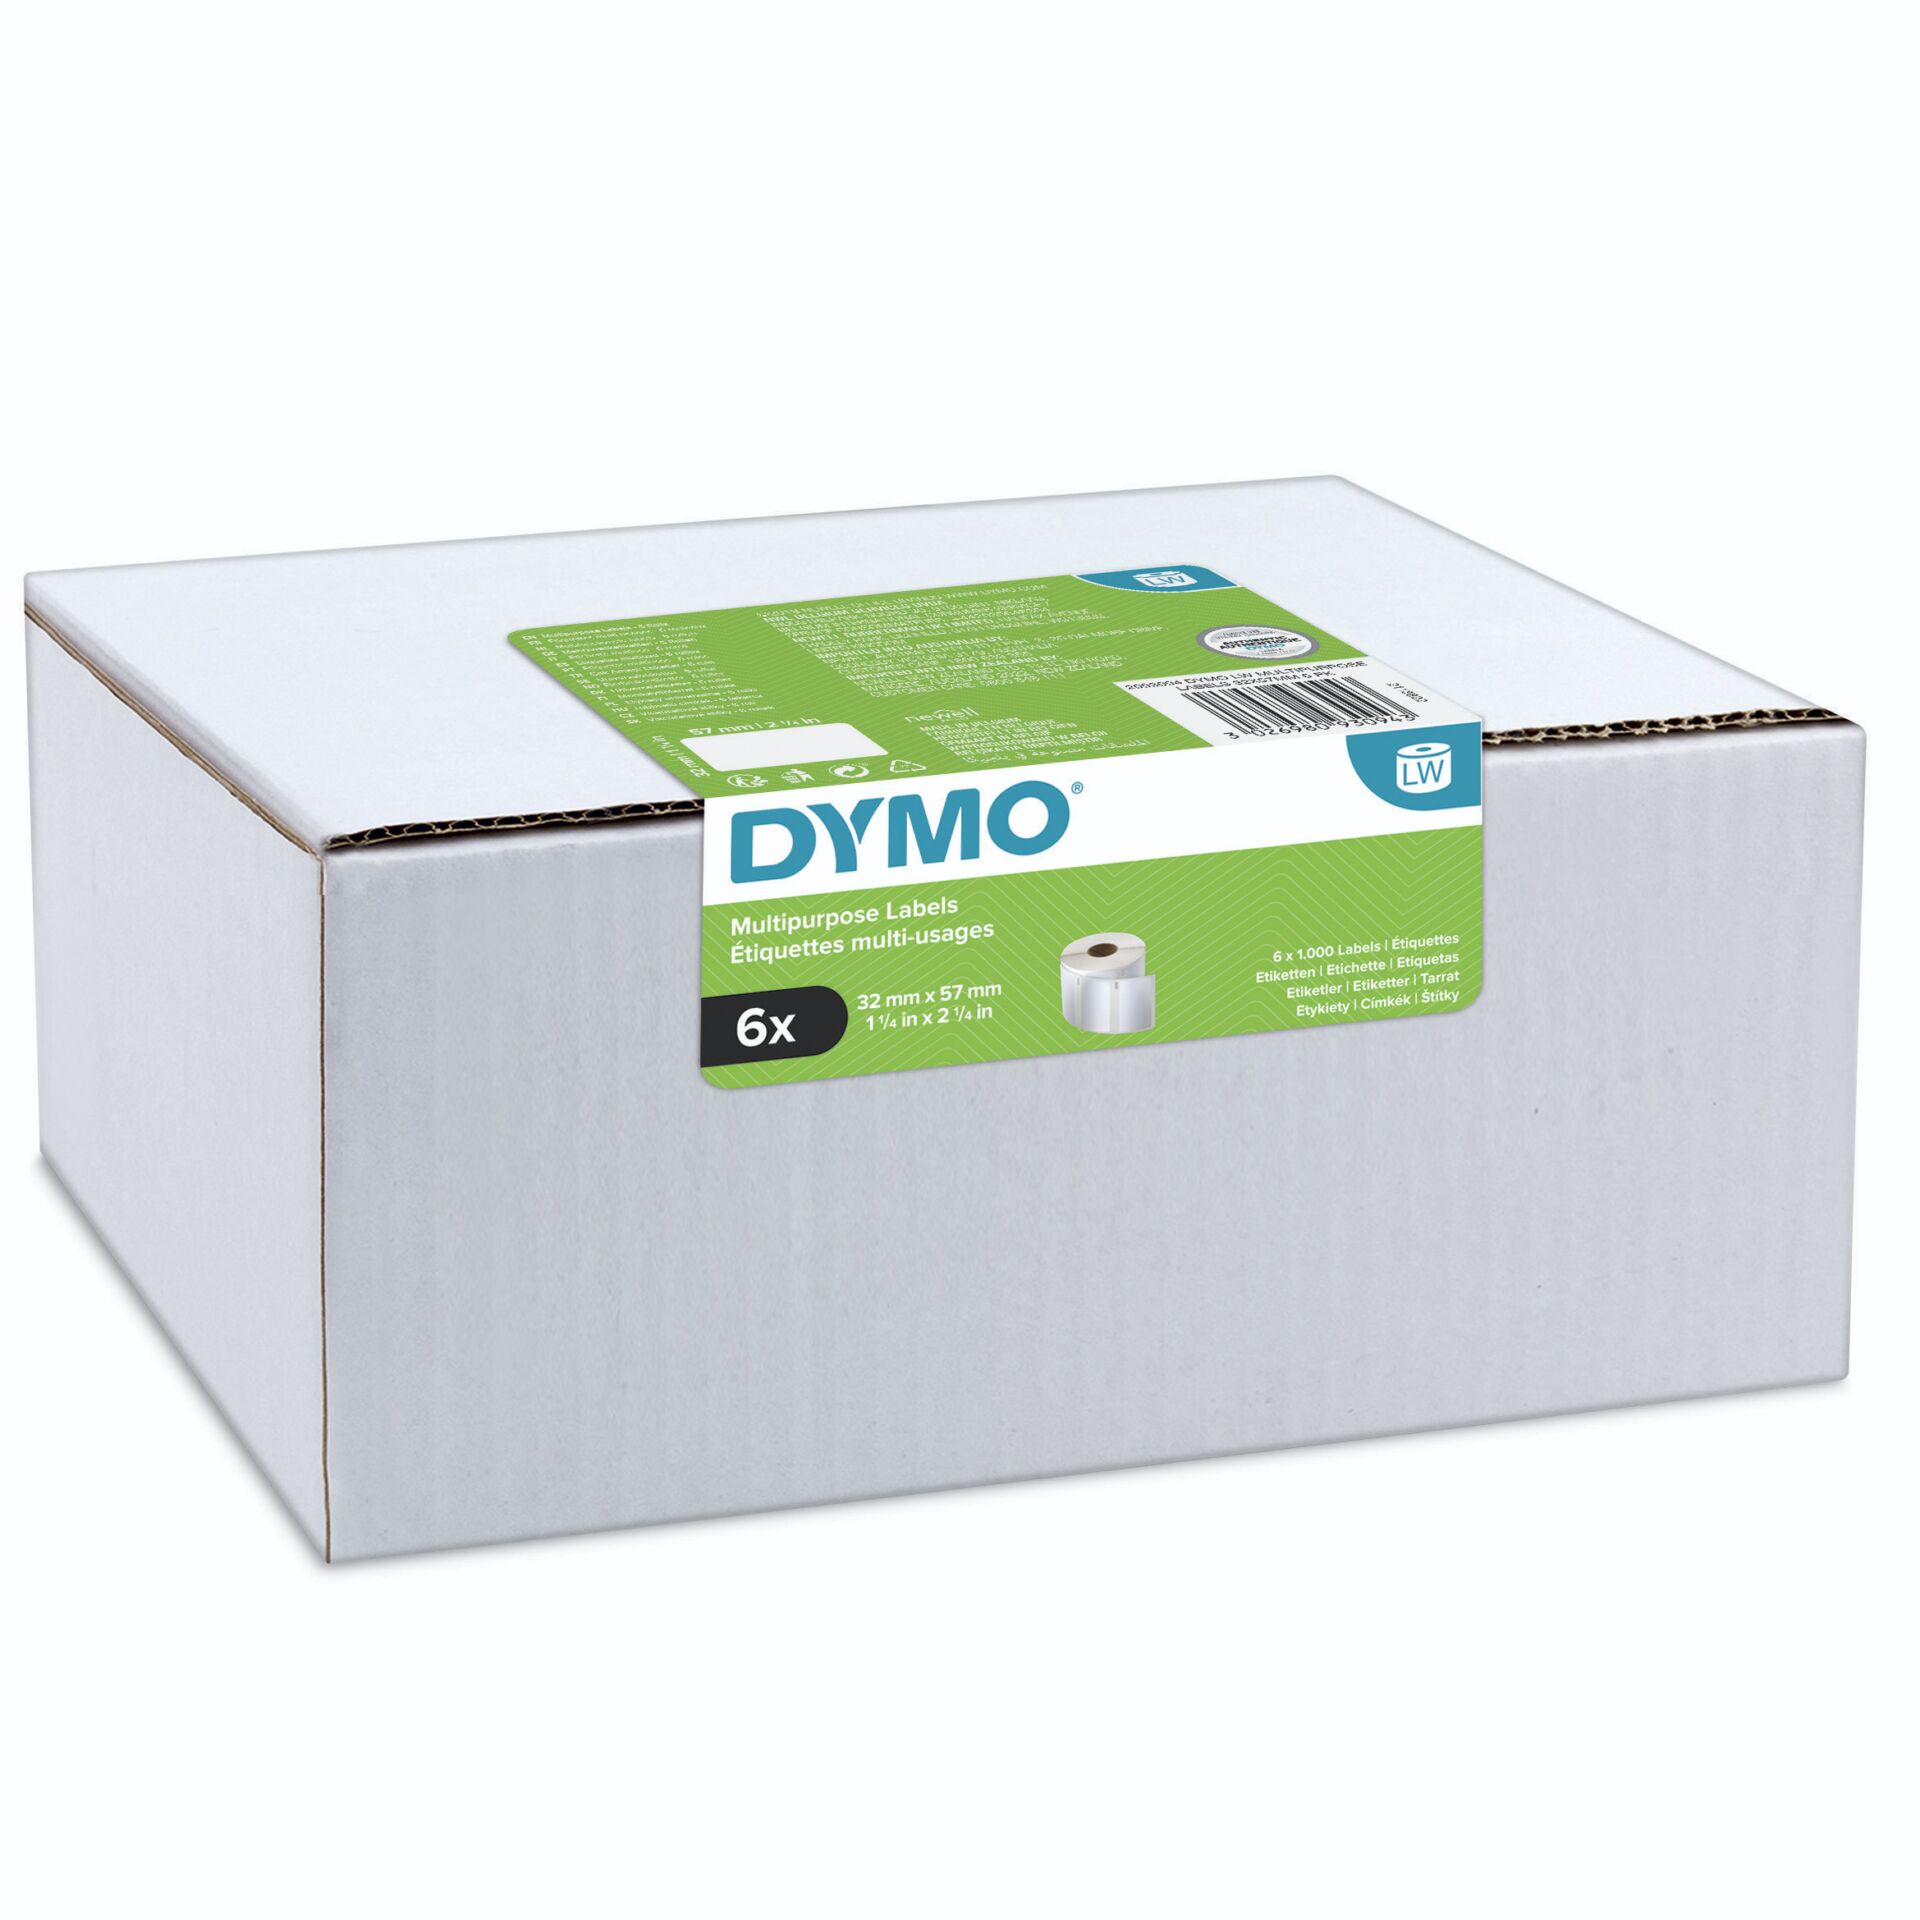 Dymo LW-Mehrzwecketiketten, 32 mm x 57 mm, 6 Rollen 1000 Etiketten für LabelWriter-Beschriftungsgeräte